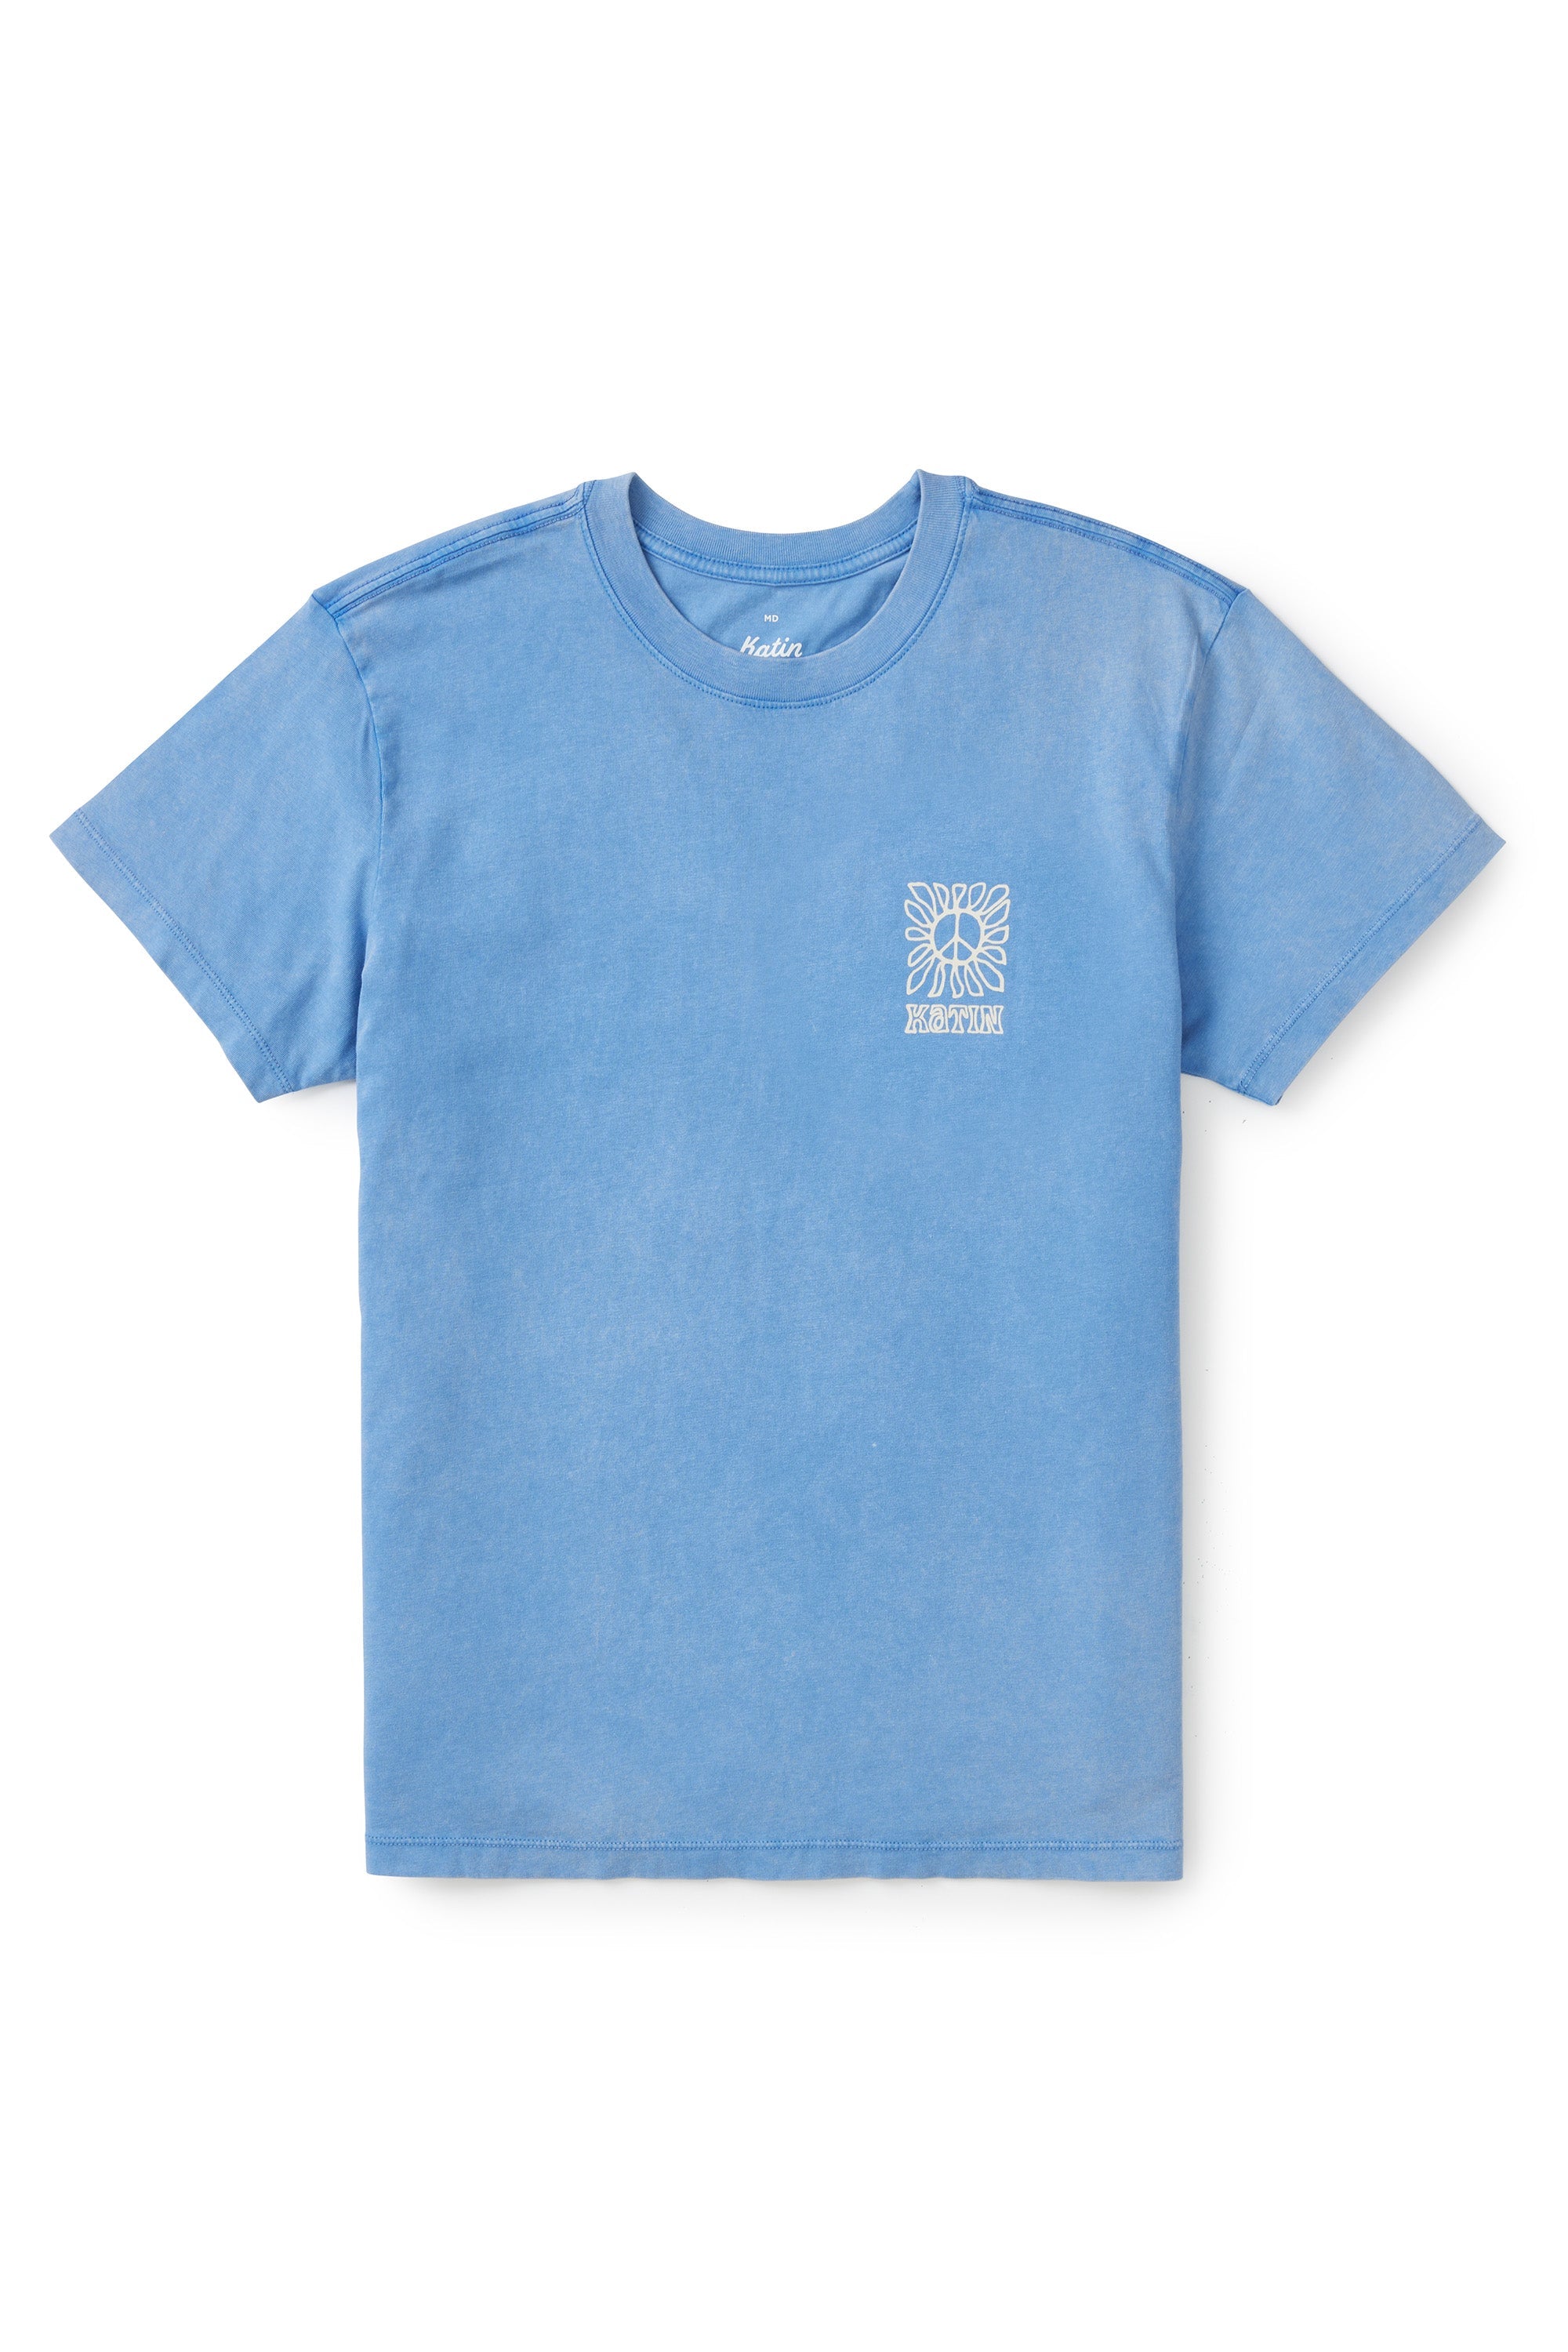 Gemeinschafts-T-Shirt | Katin USA - Kind